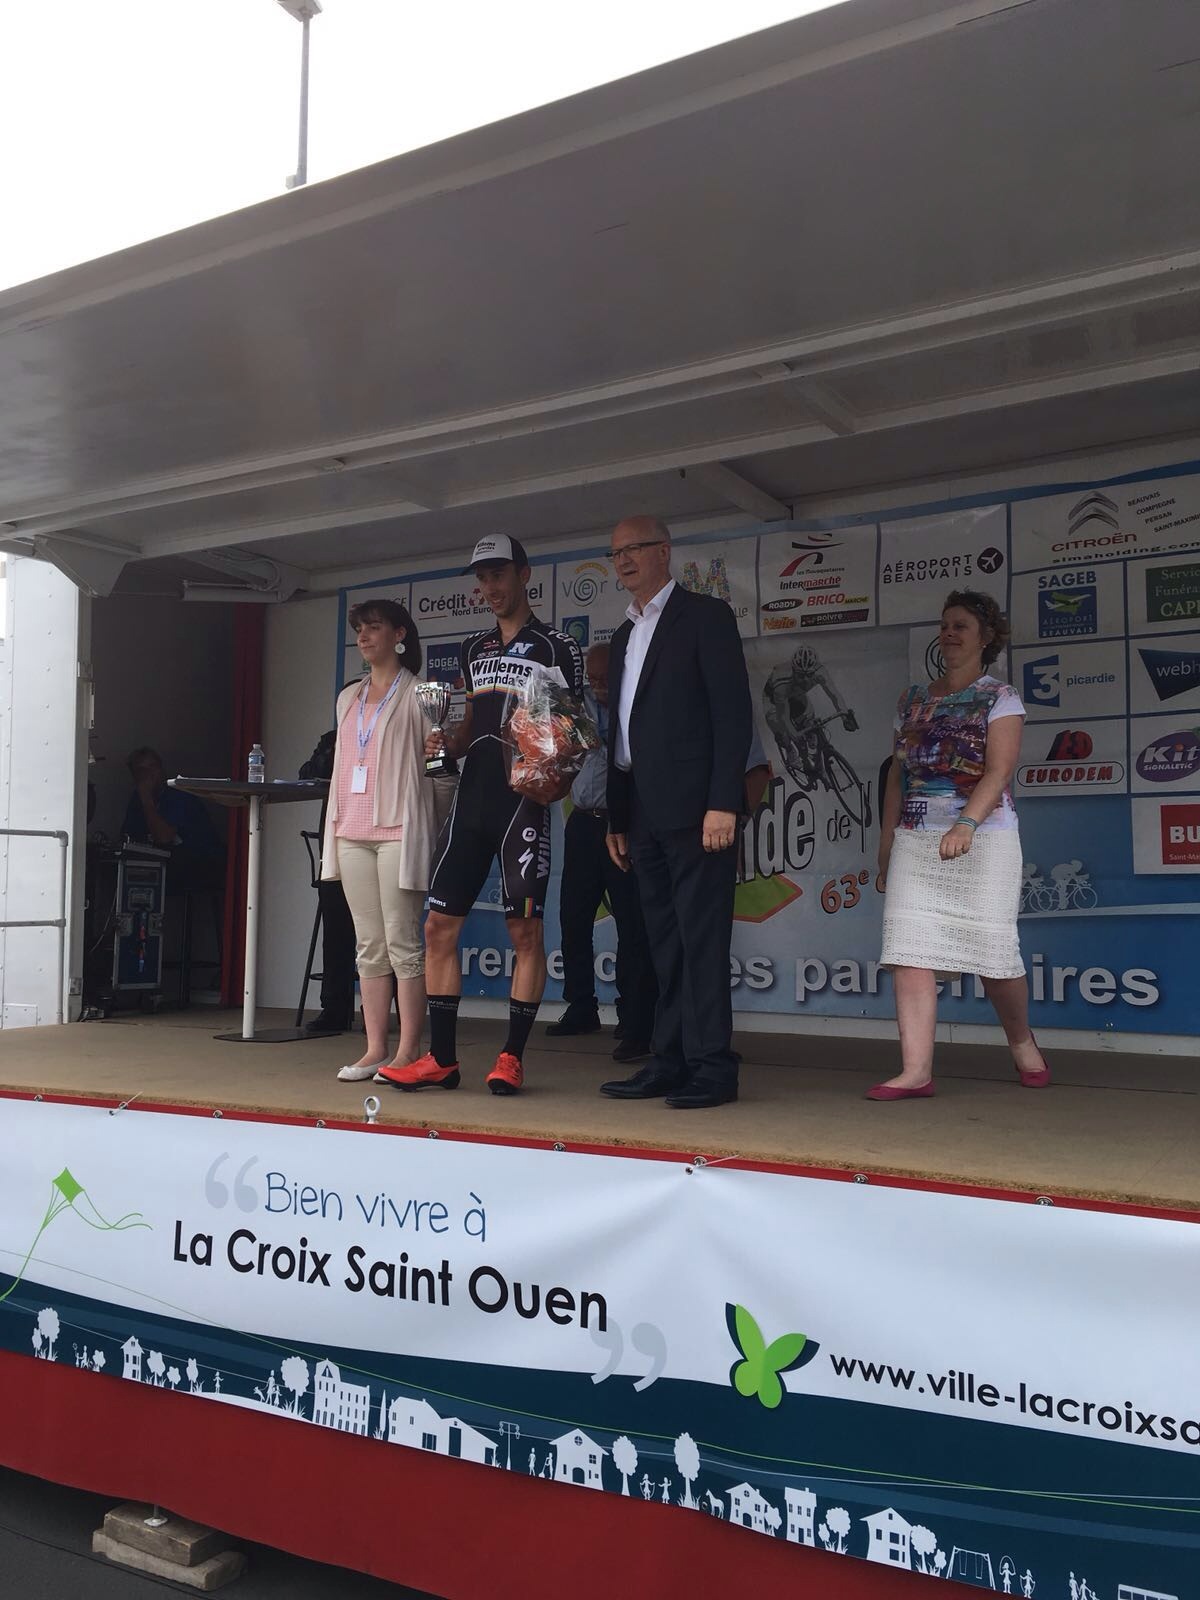 Ronde de l’Oise seconda tappa a De Bondt, un’azzurro sul podio 